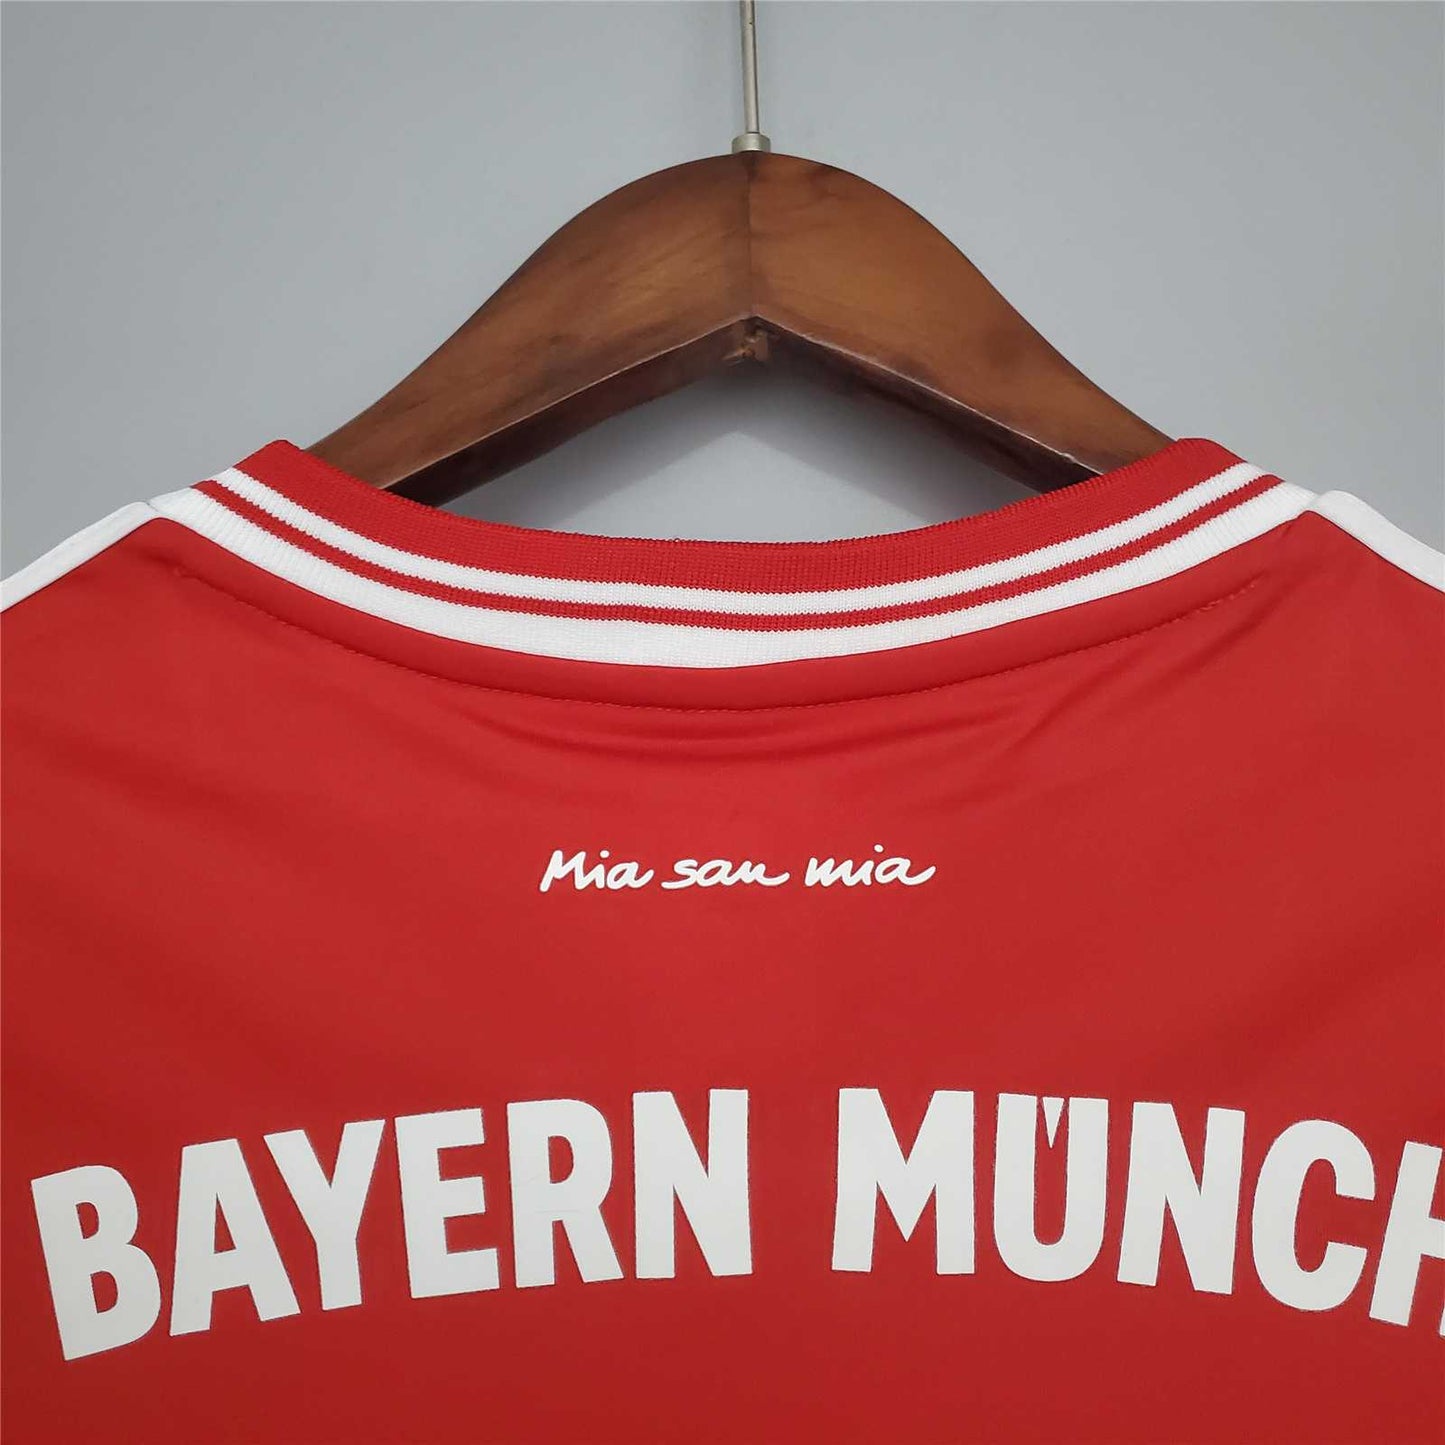 FC Bayern Munich 13-14 Home Shirt